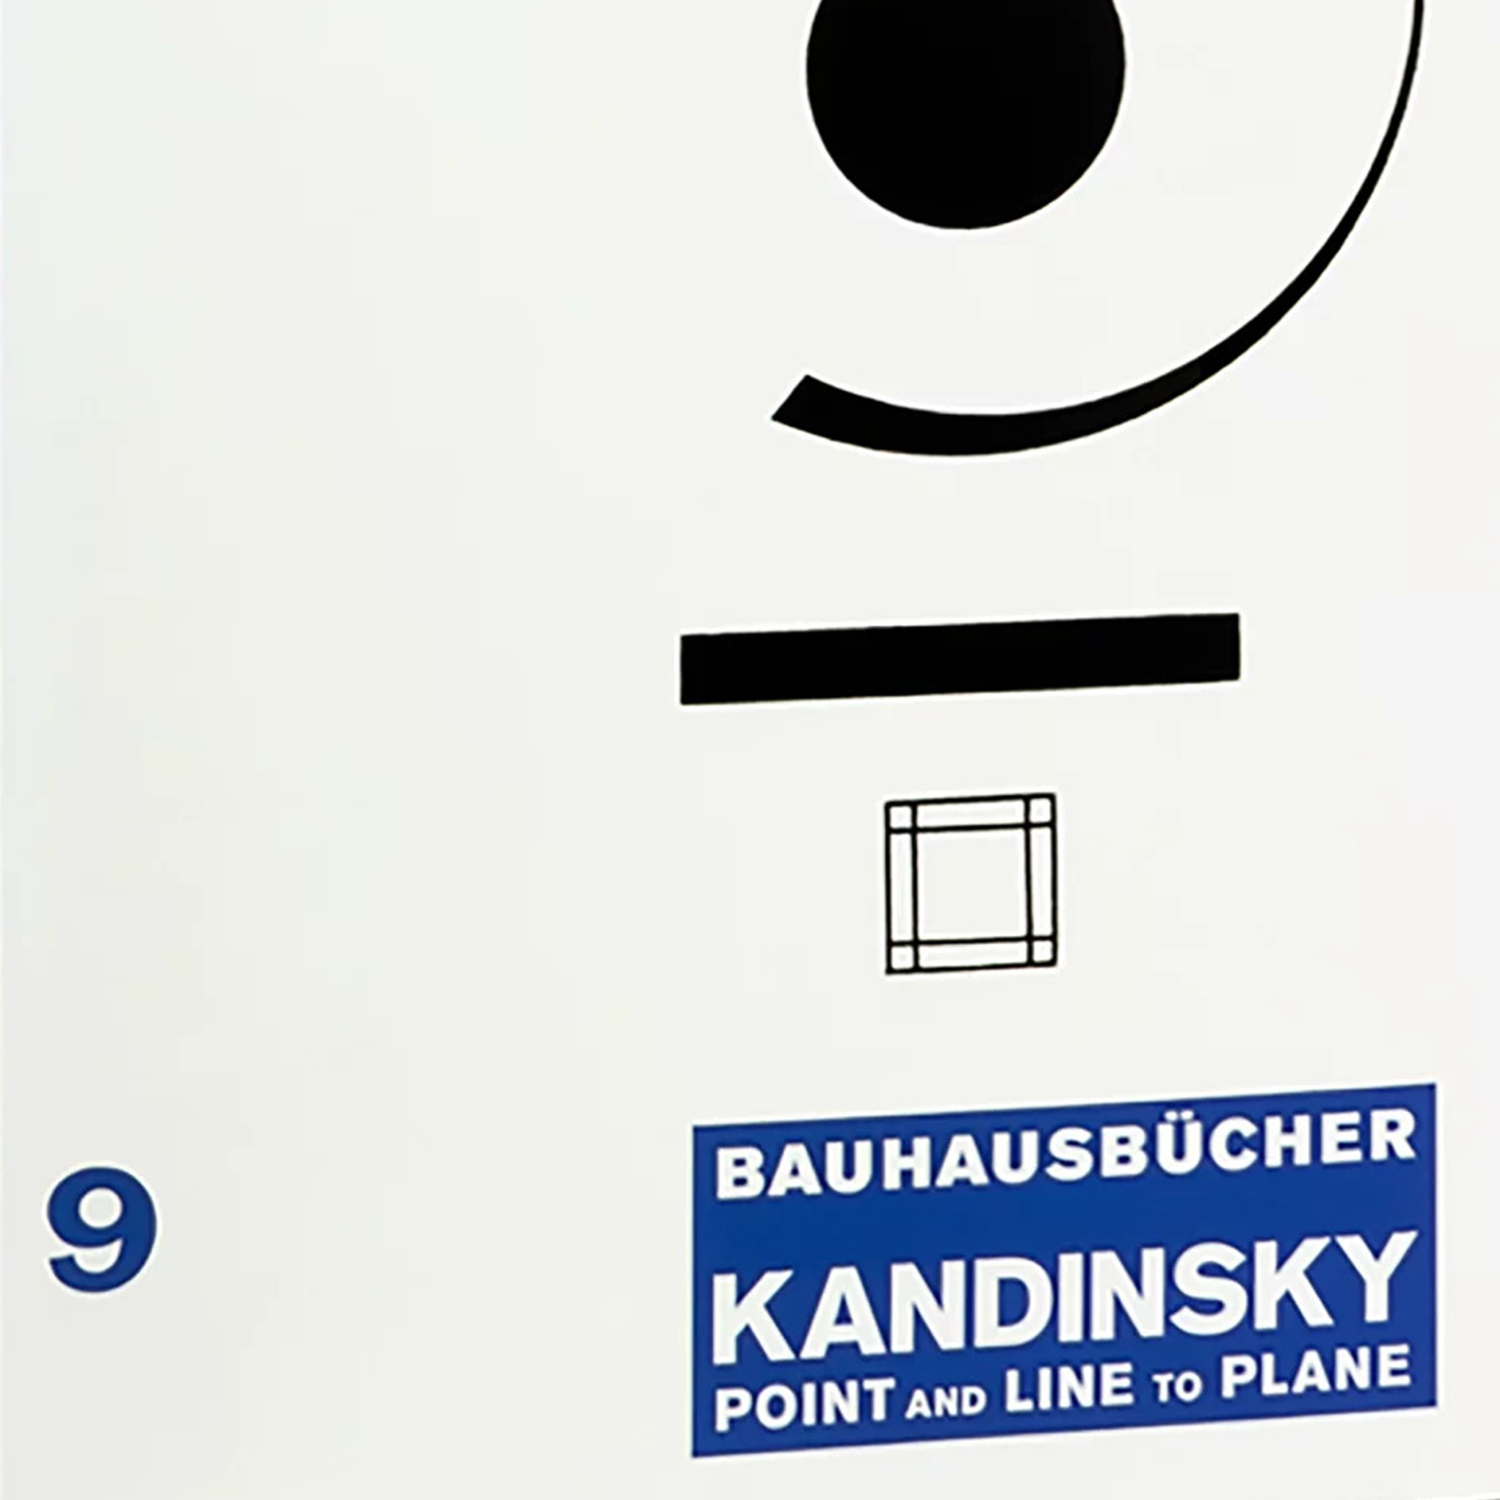 Bauhausbücher 9 の画像